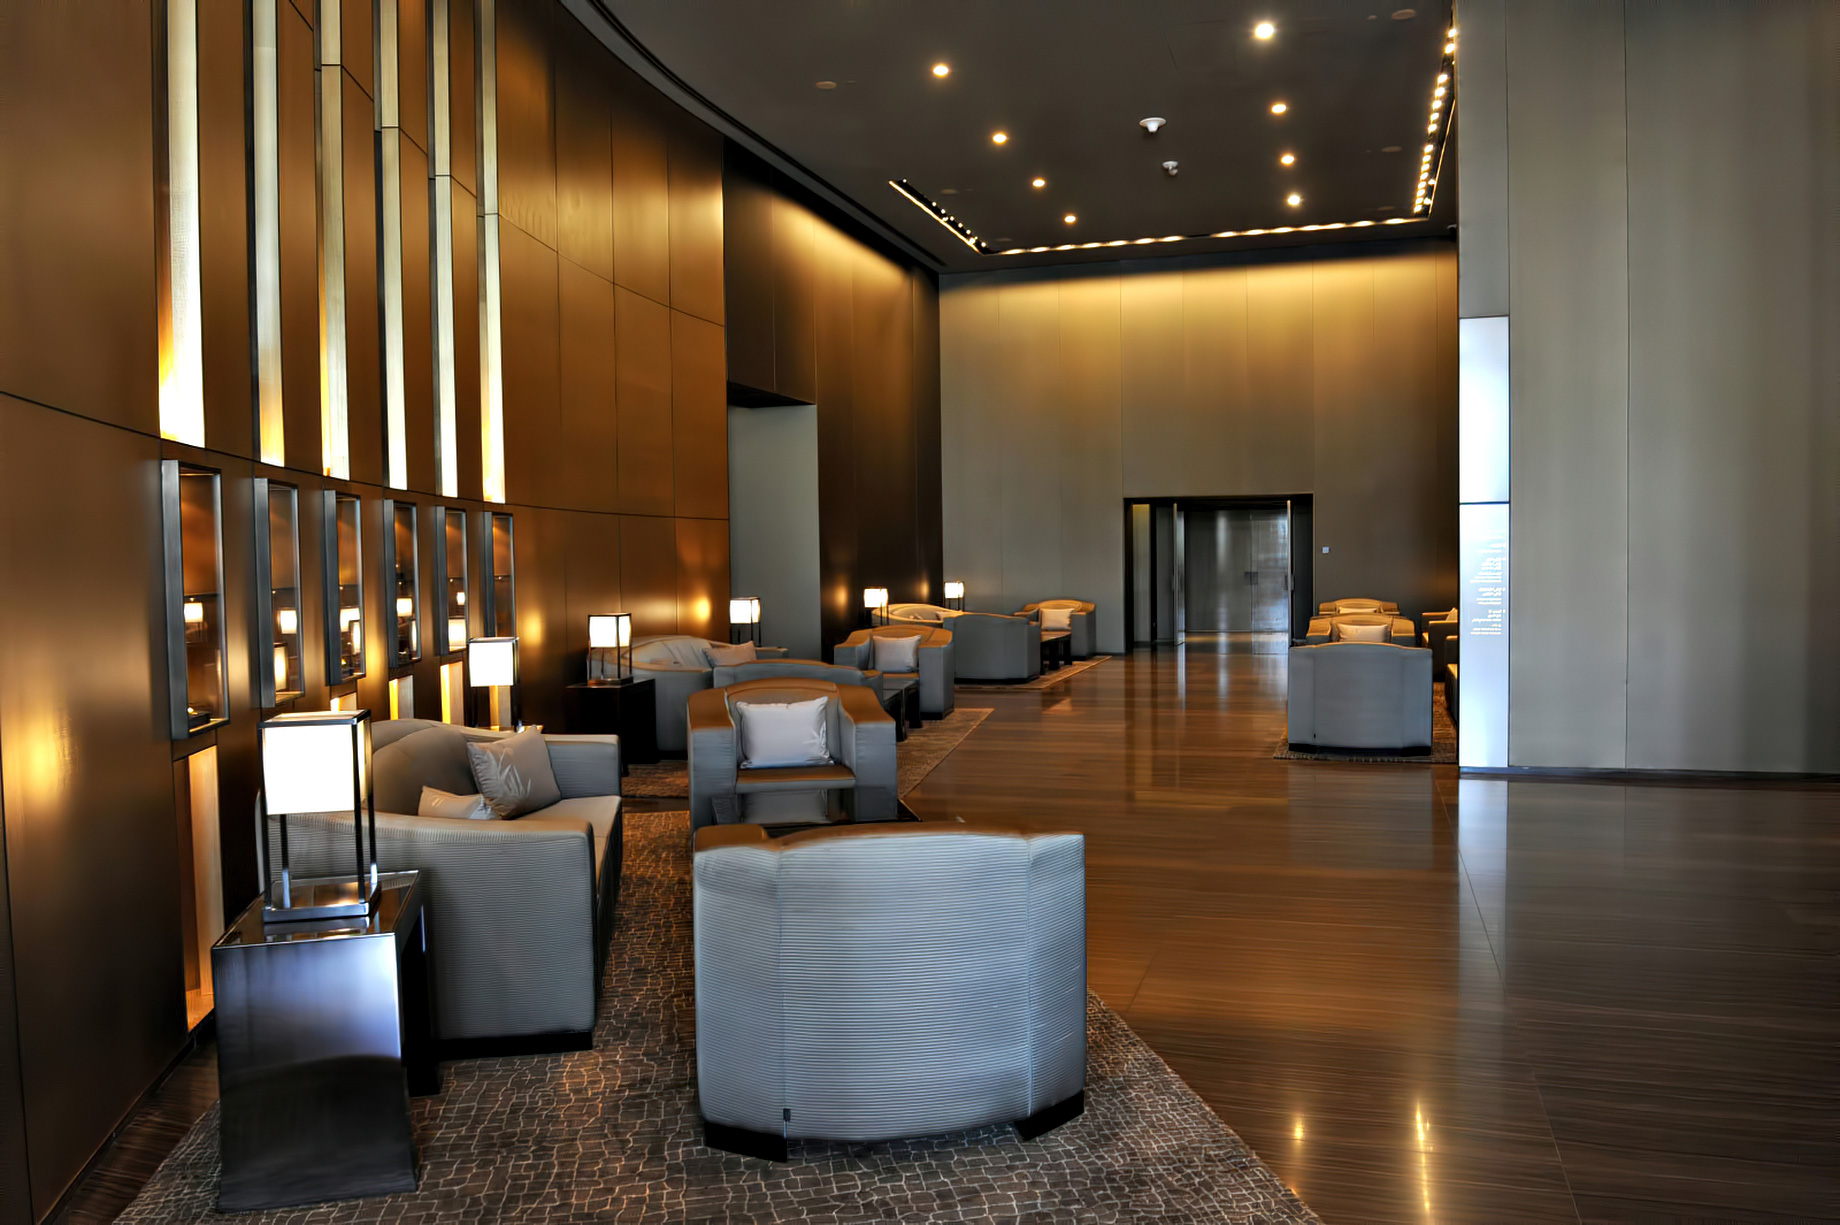 Armani Hotel Dubai – Burj Khalifa, Dubai, UAE – Armani Hotel Interior Entrance Lounge